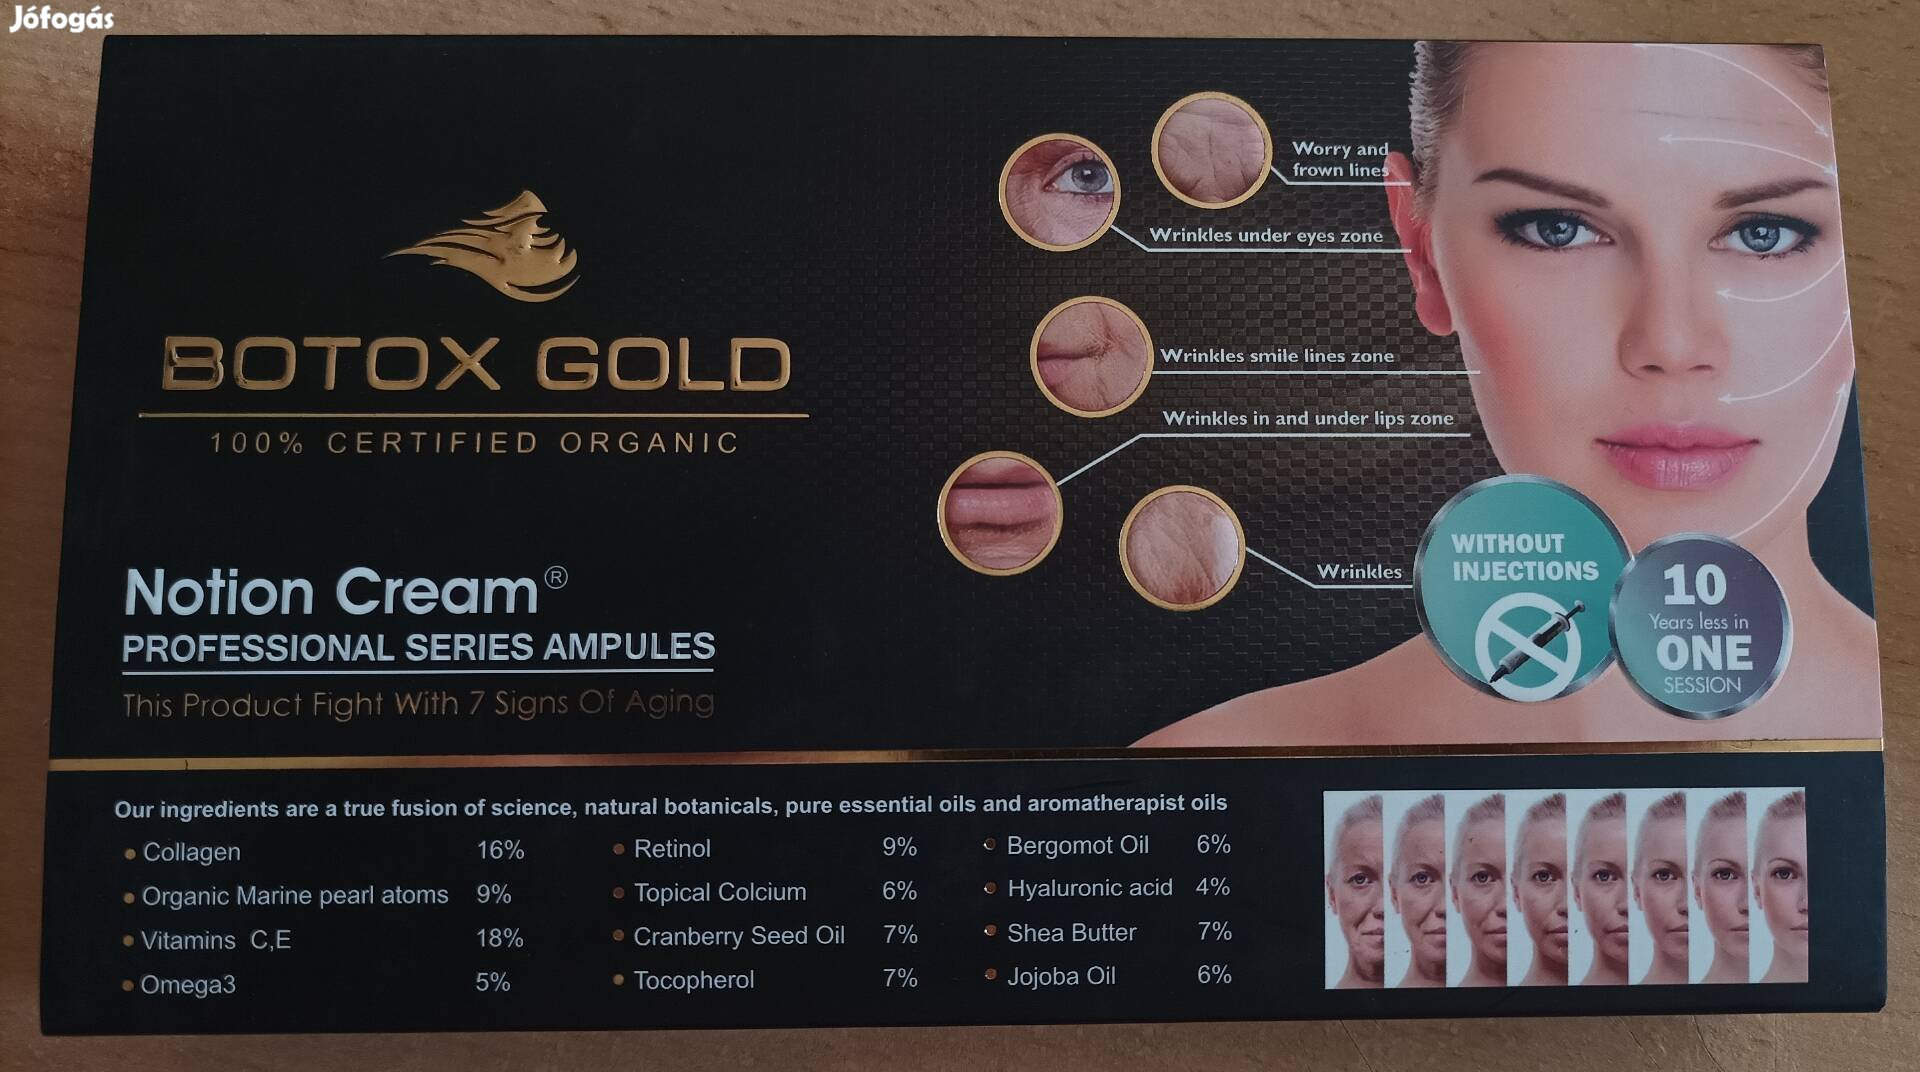 Botox Gold feltöltőnyag, otthoni használatra.